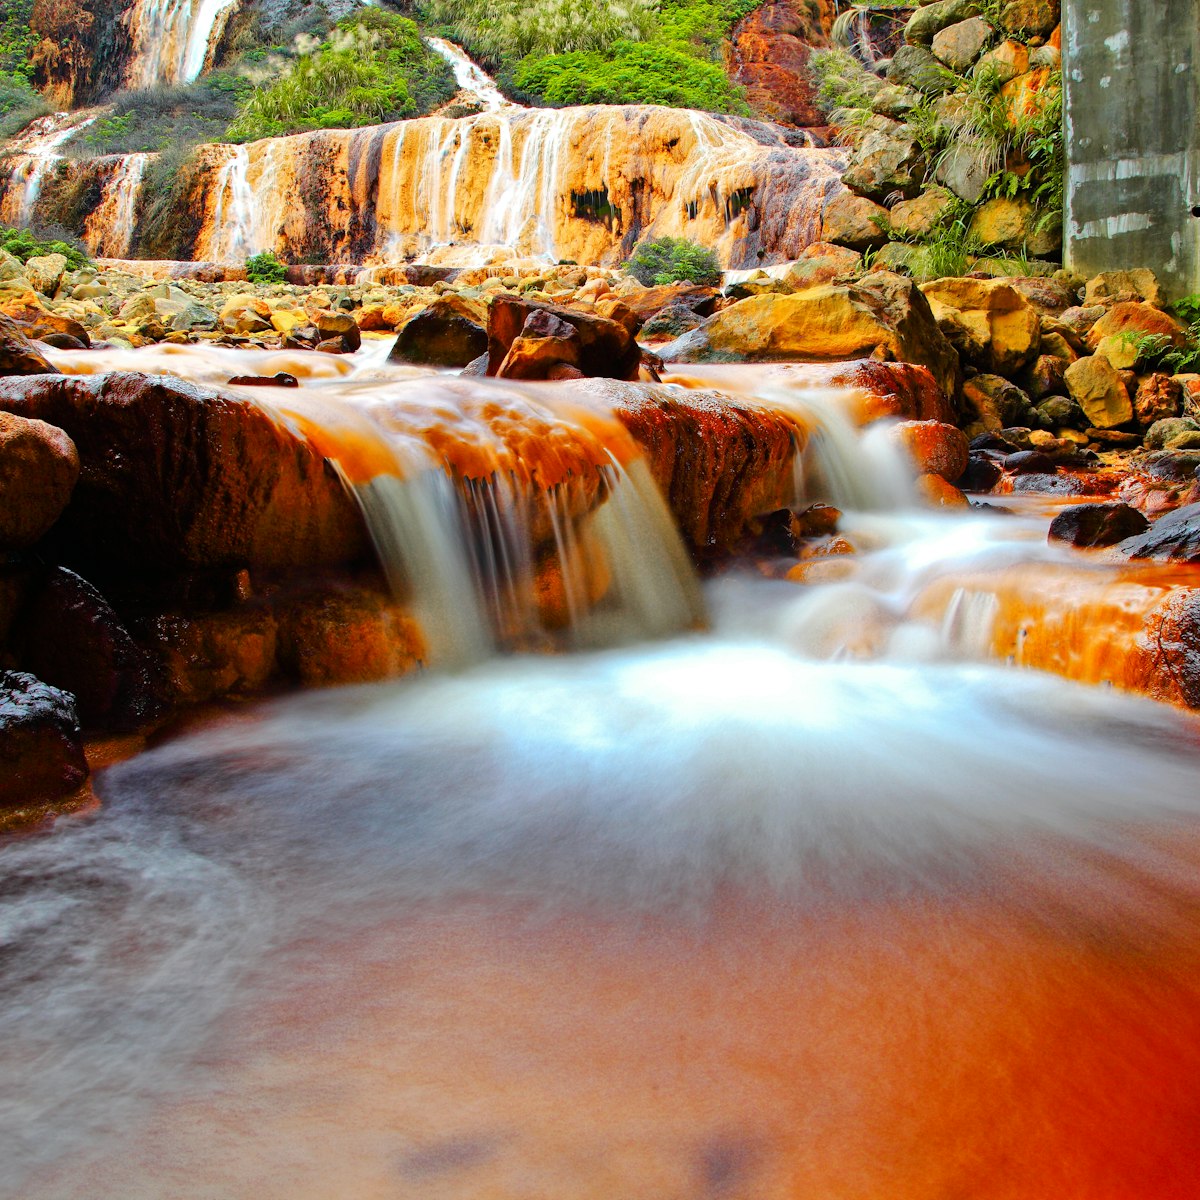 Golden waterfall,Jiufen,Taiwan